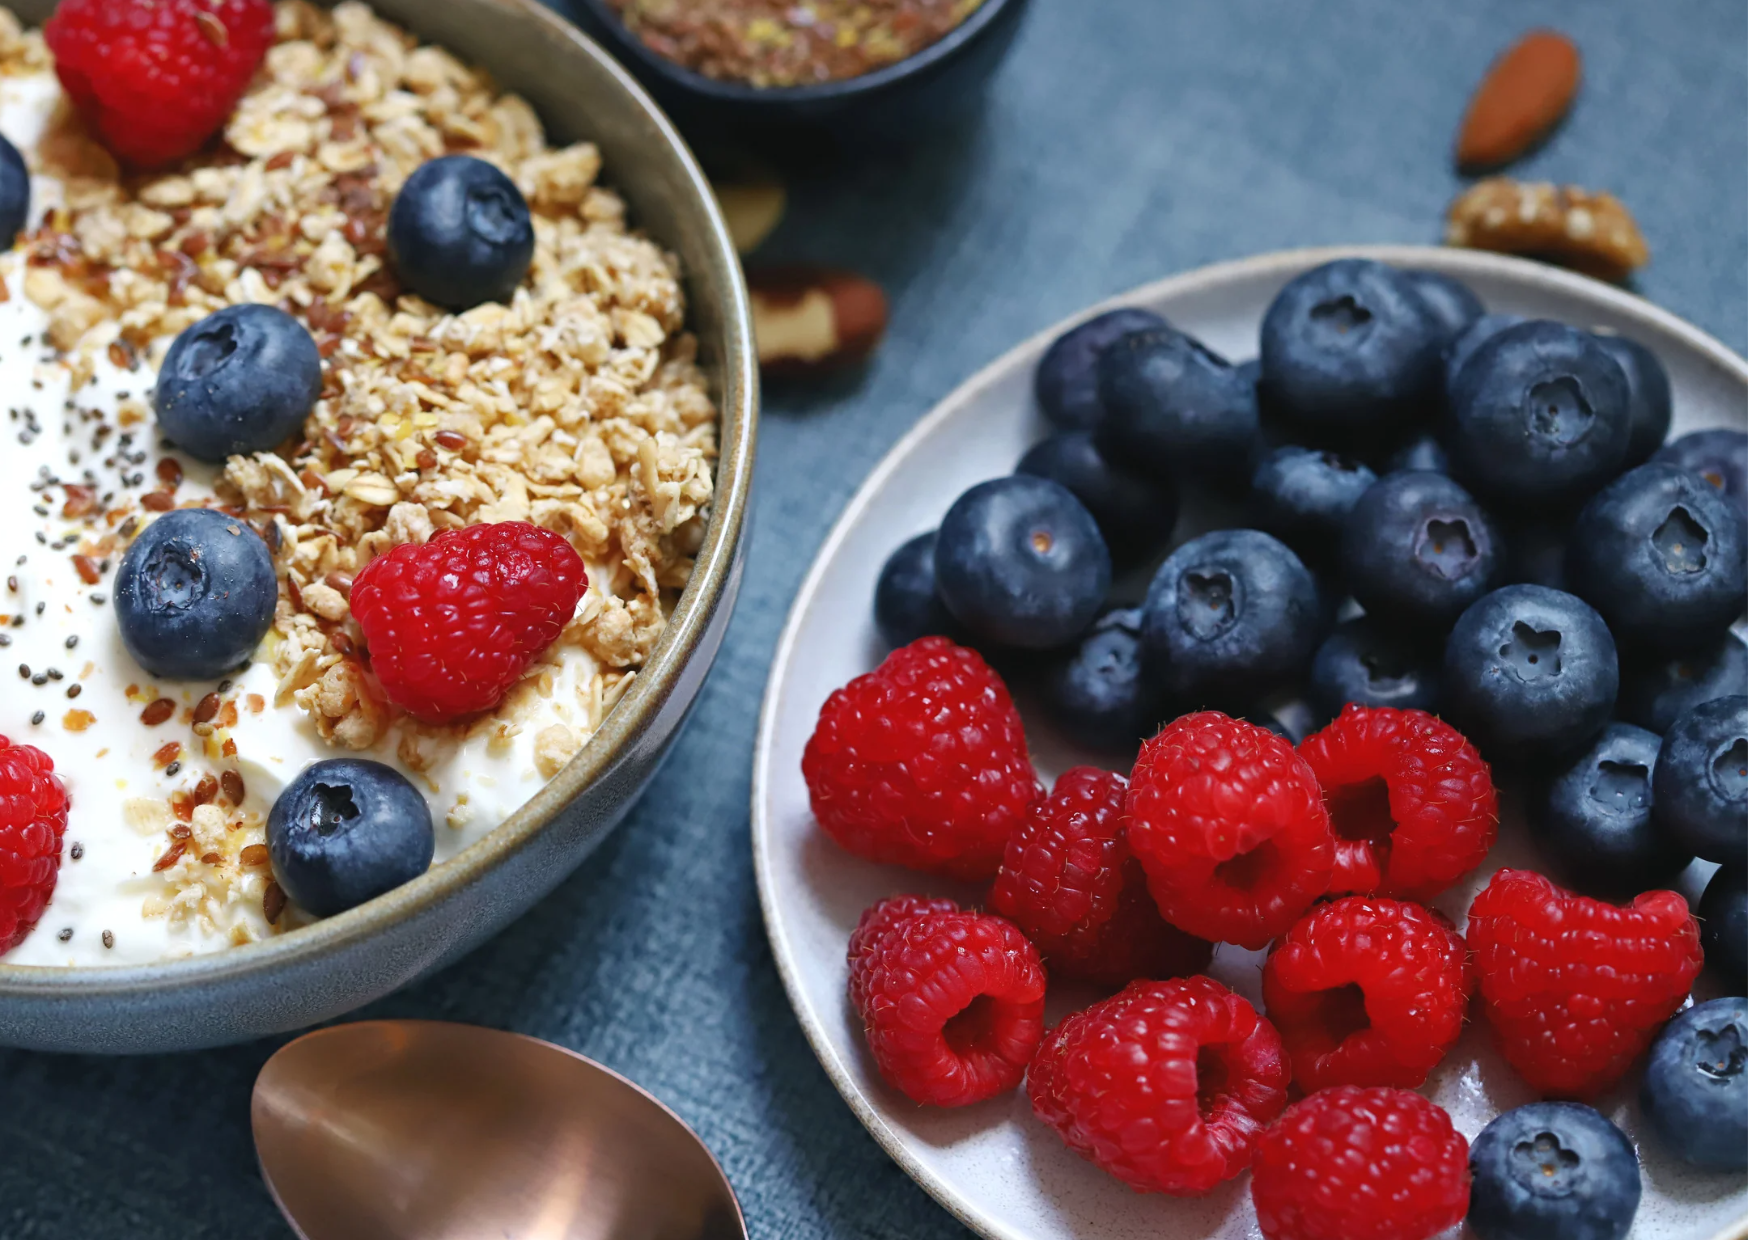 Yogurt, Obst, Leinsamen und Haferflocken - Beispiel für eine gesunde Ernährung, um das Wohlbefinden während der Regel zu stärken